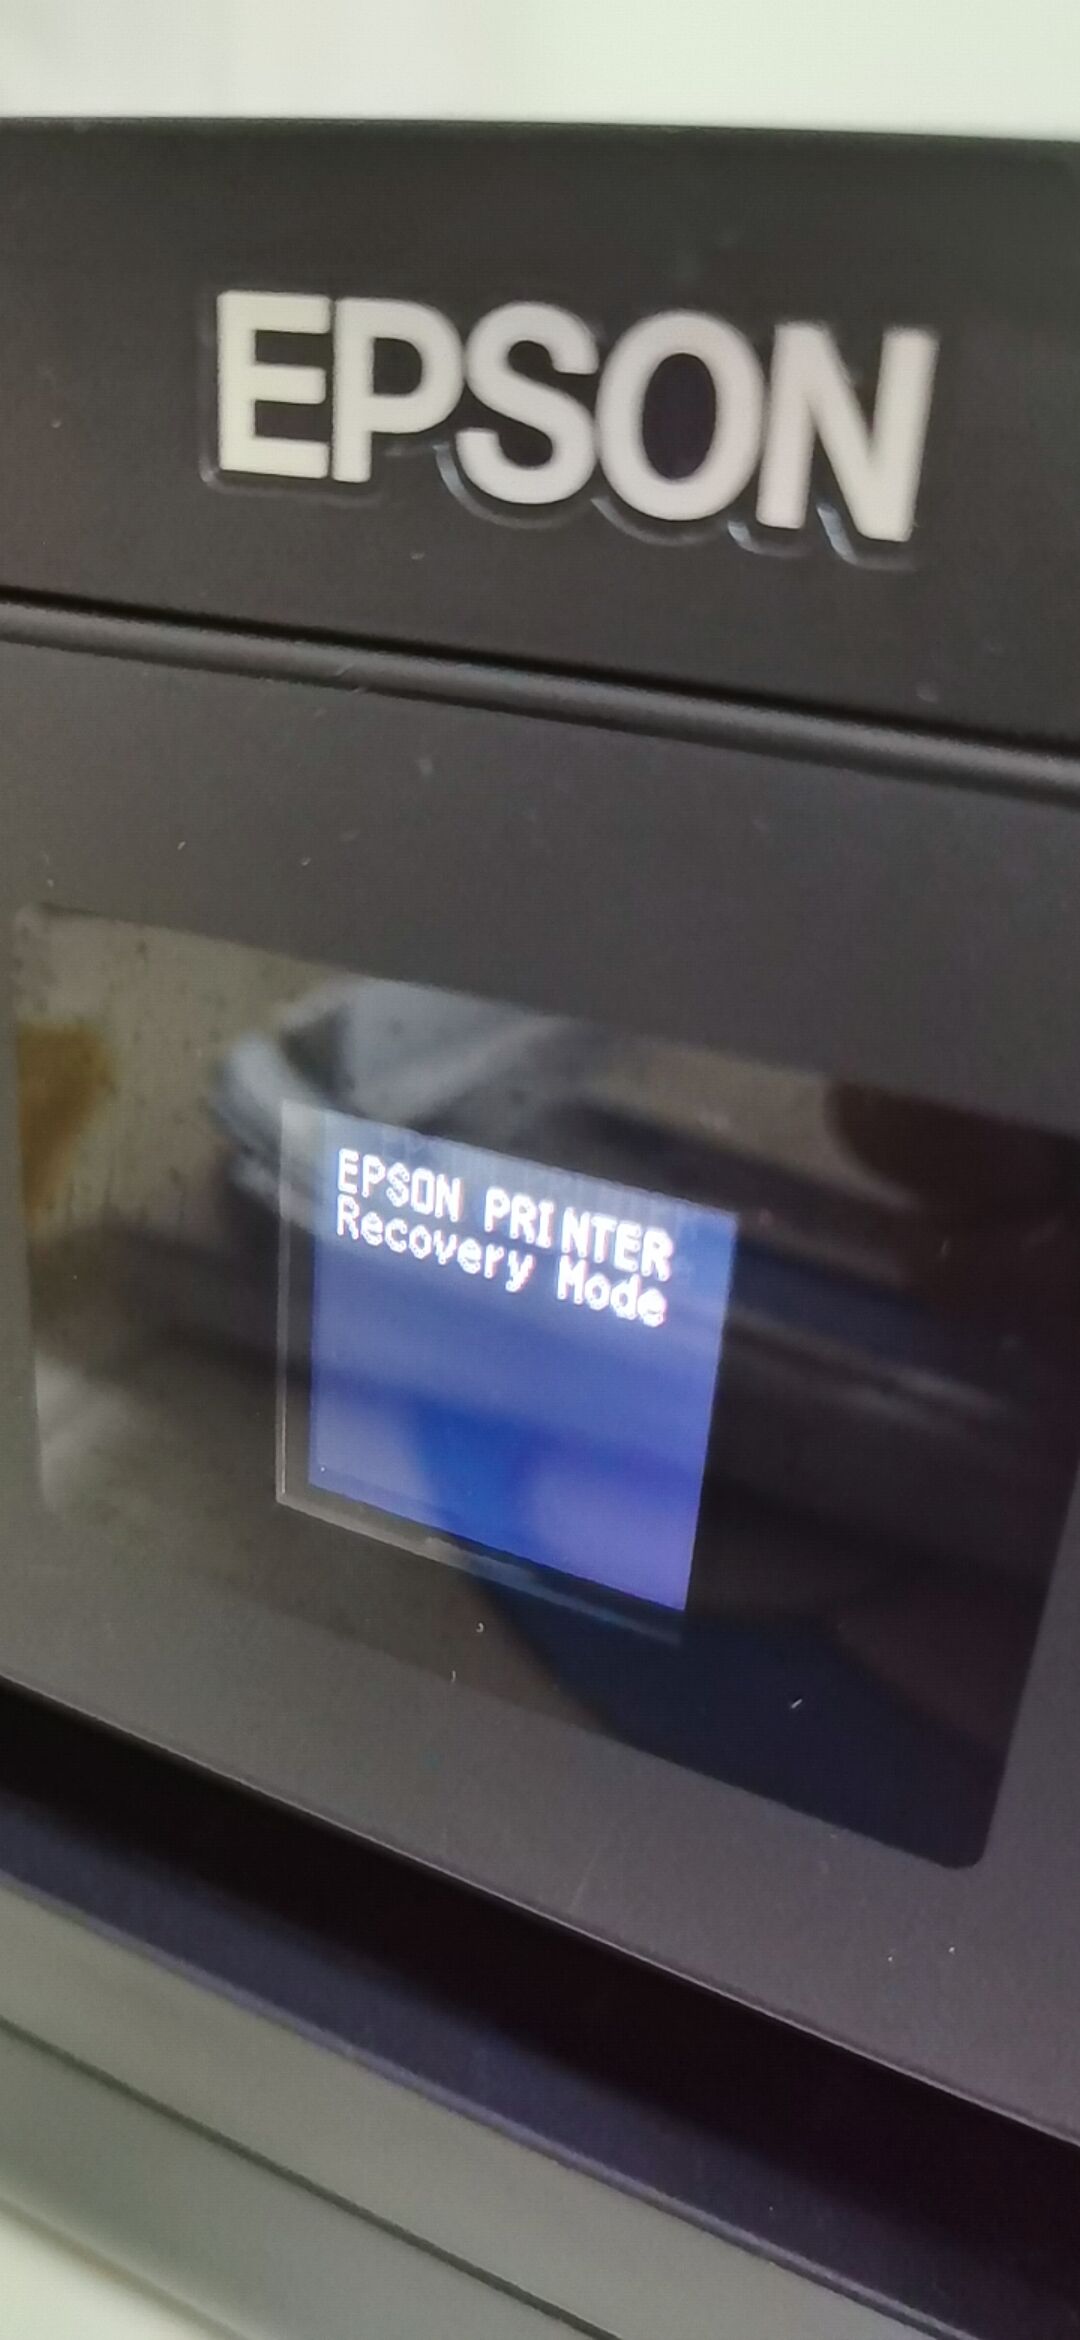 爱普生4163打印机故障setjig 佳能ts6080提示当前打印机正被使用